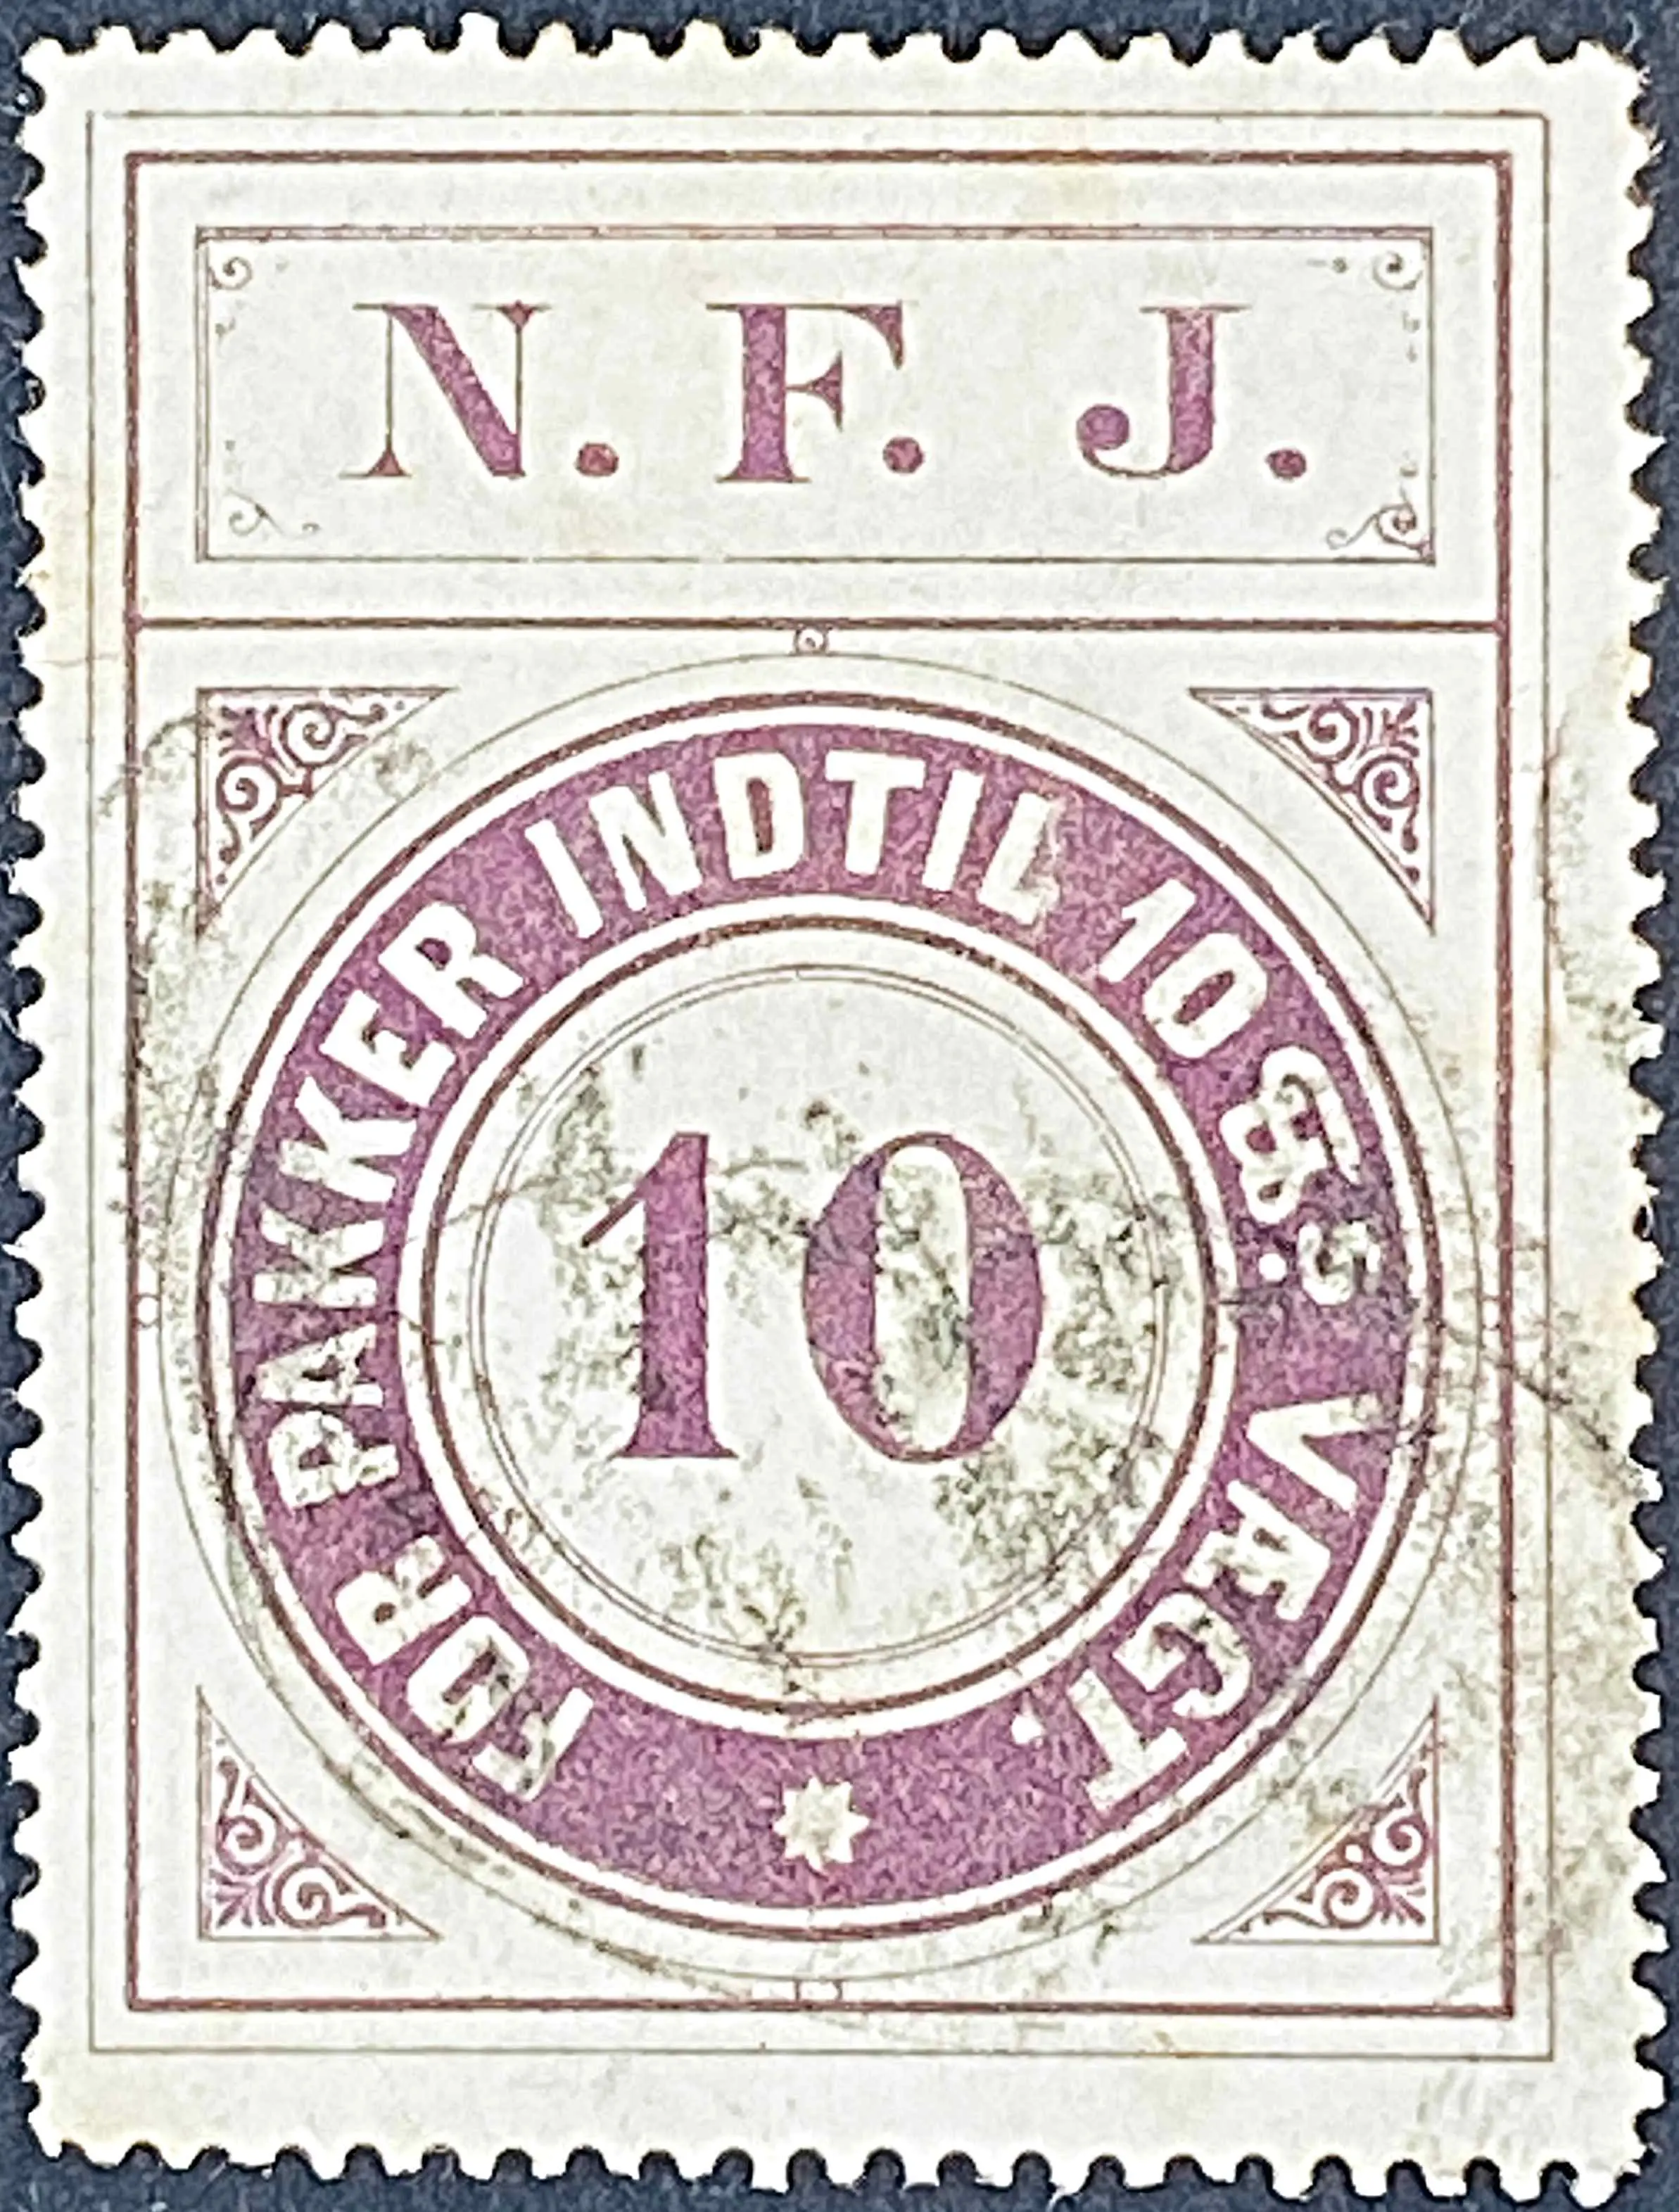 NFJ 3 - 10 Øre - Violet.